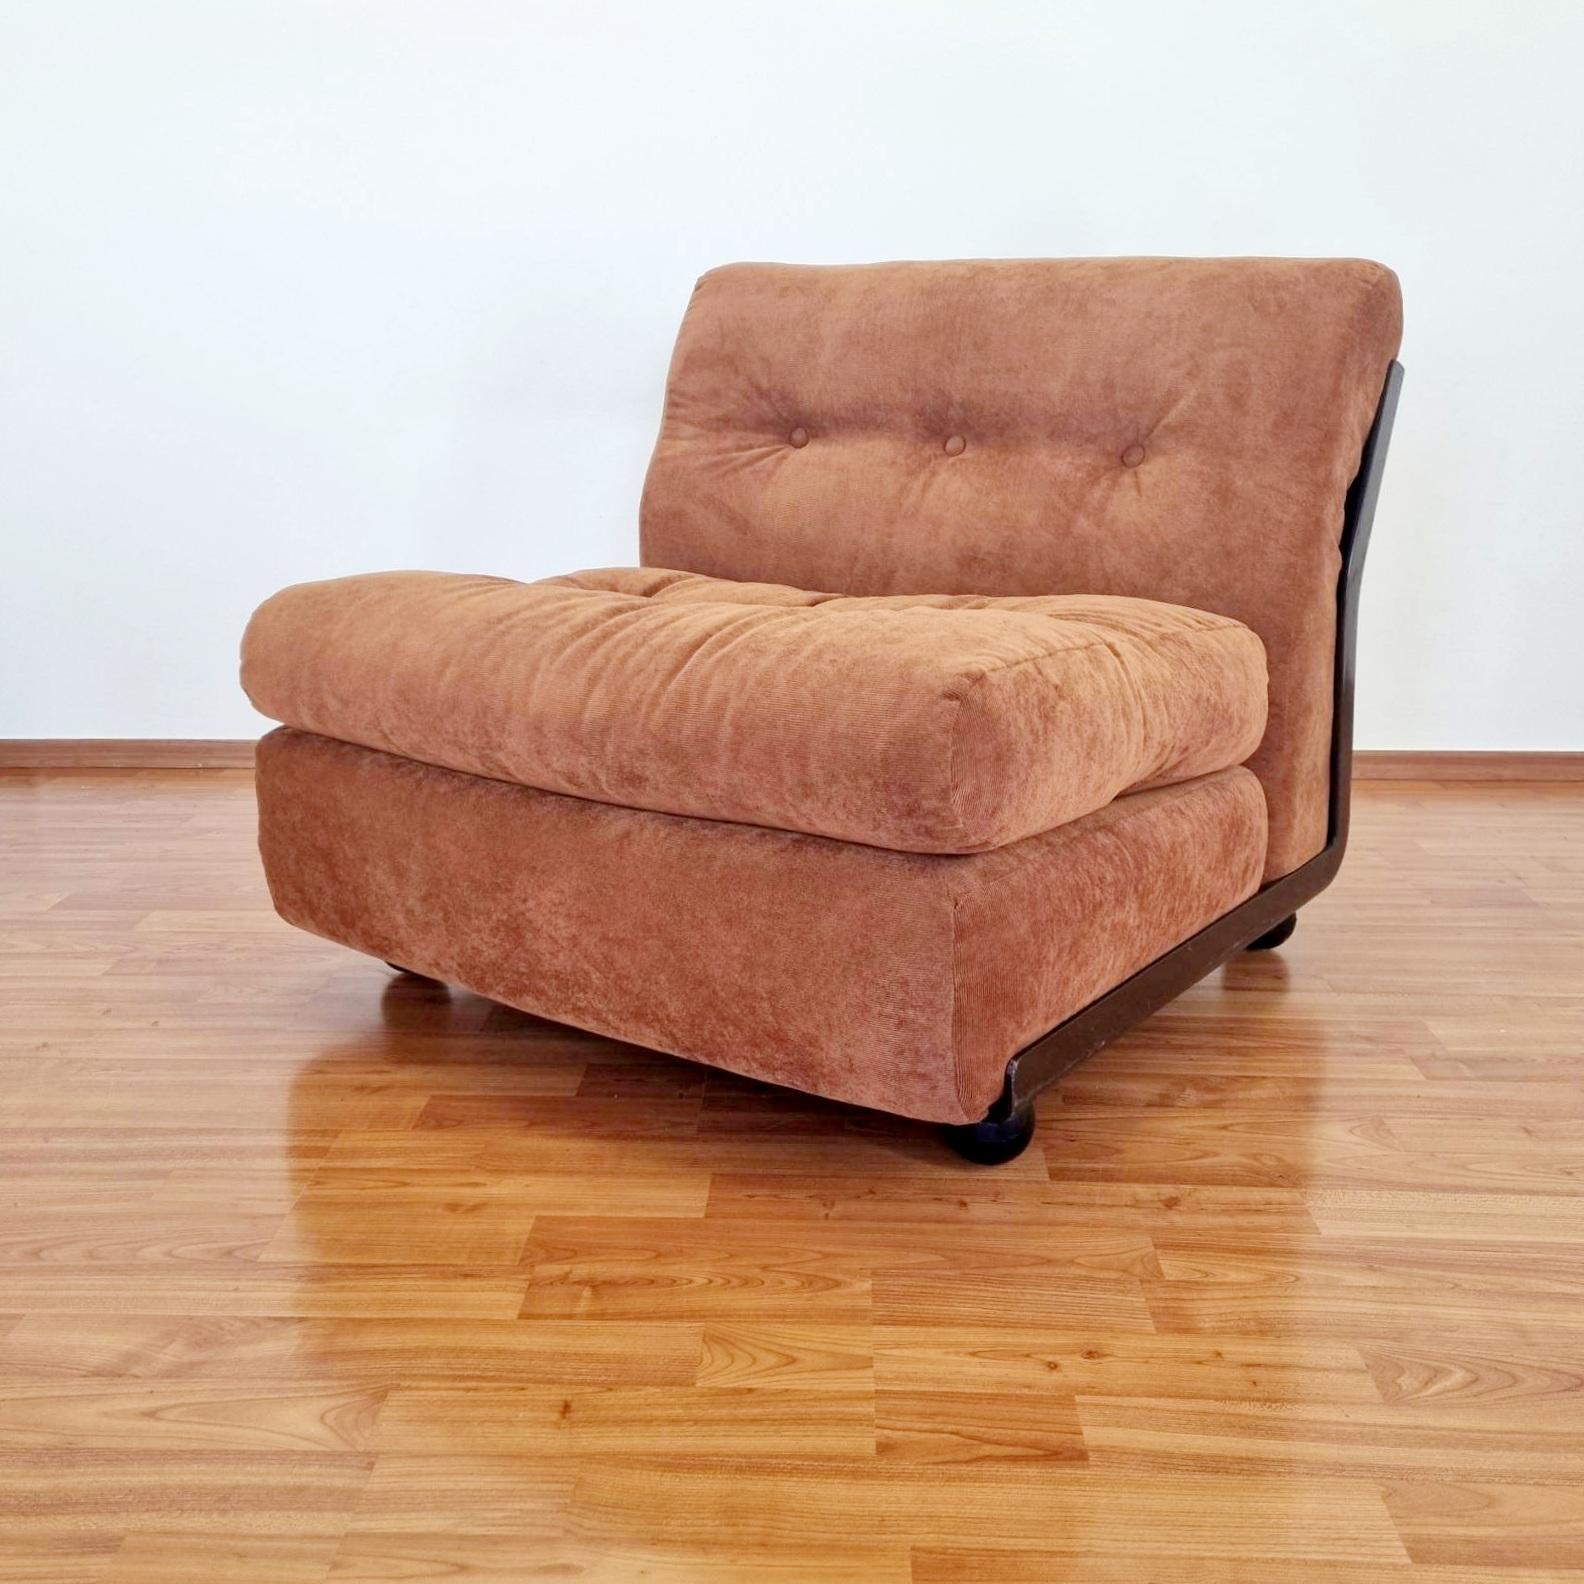 Fabric Amanta Modular Sofa Designed by Mario Bellini for C&B Italia, Italy, 1970s, Pair For Sale